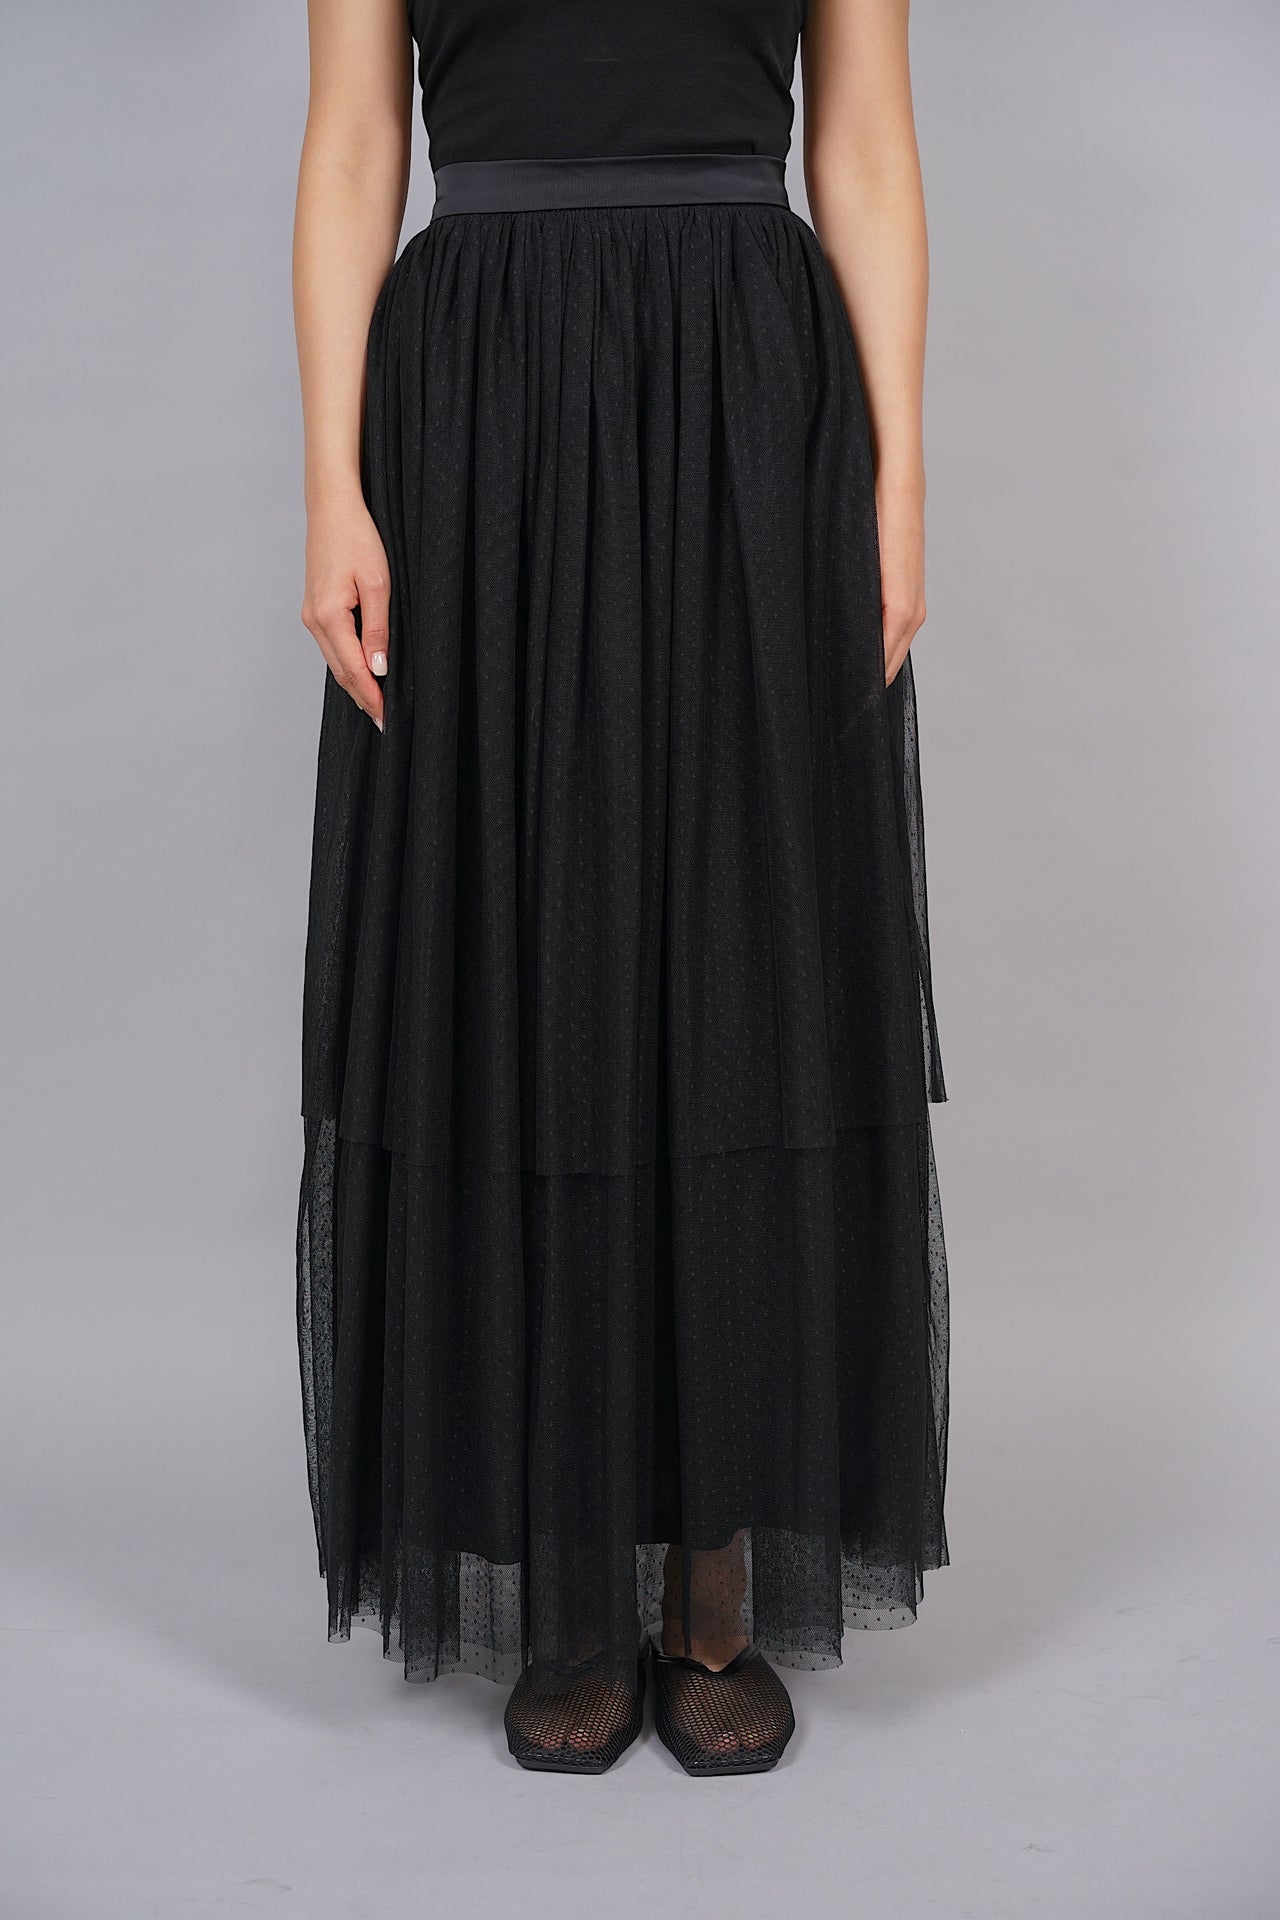 Christin Tulle Skirt in Black